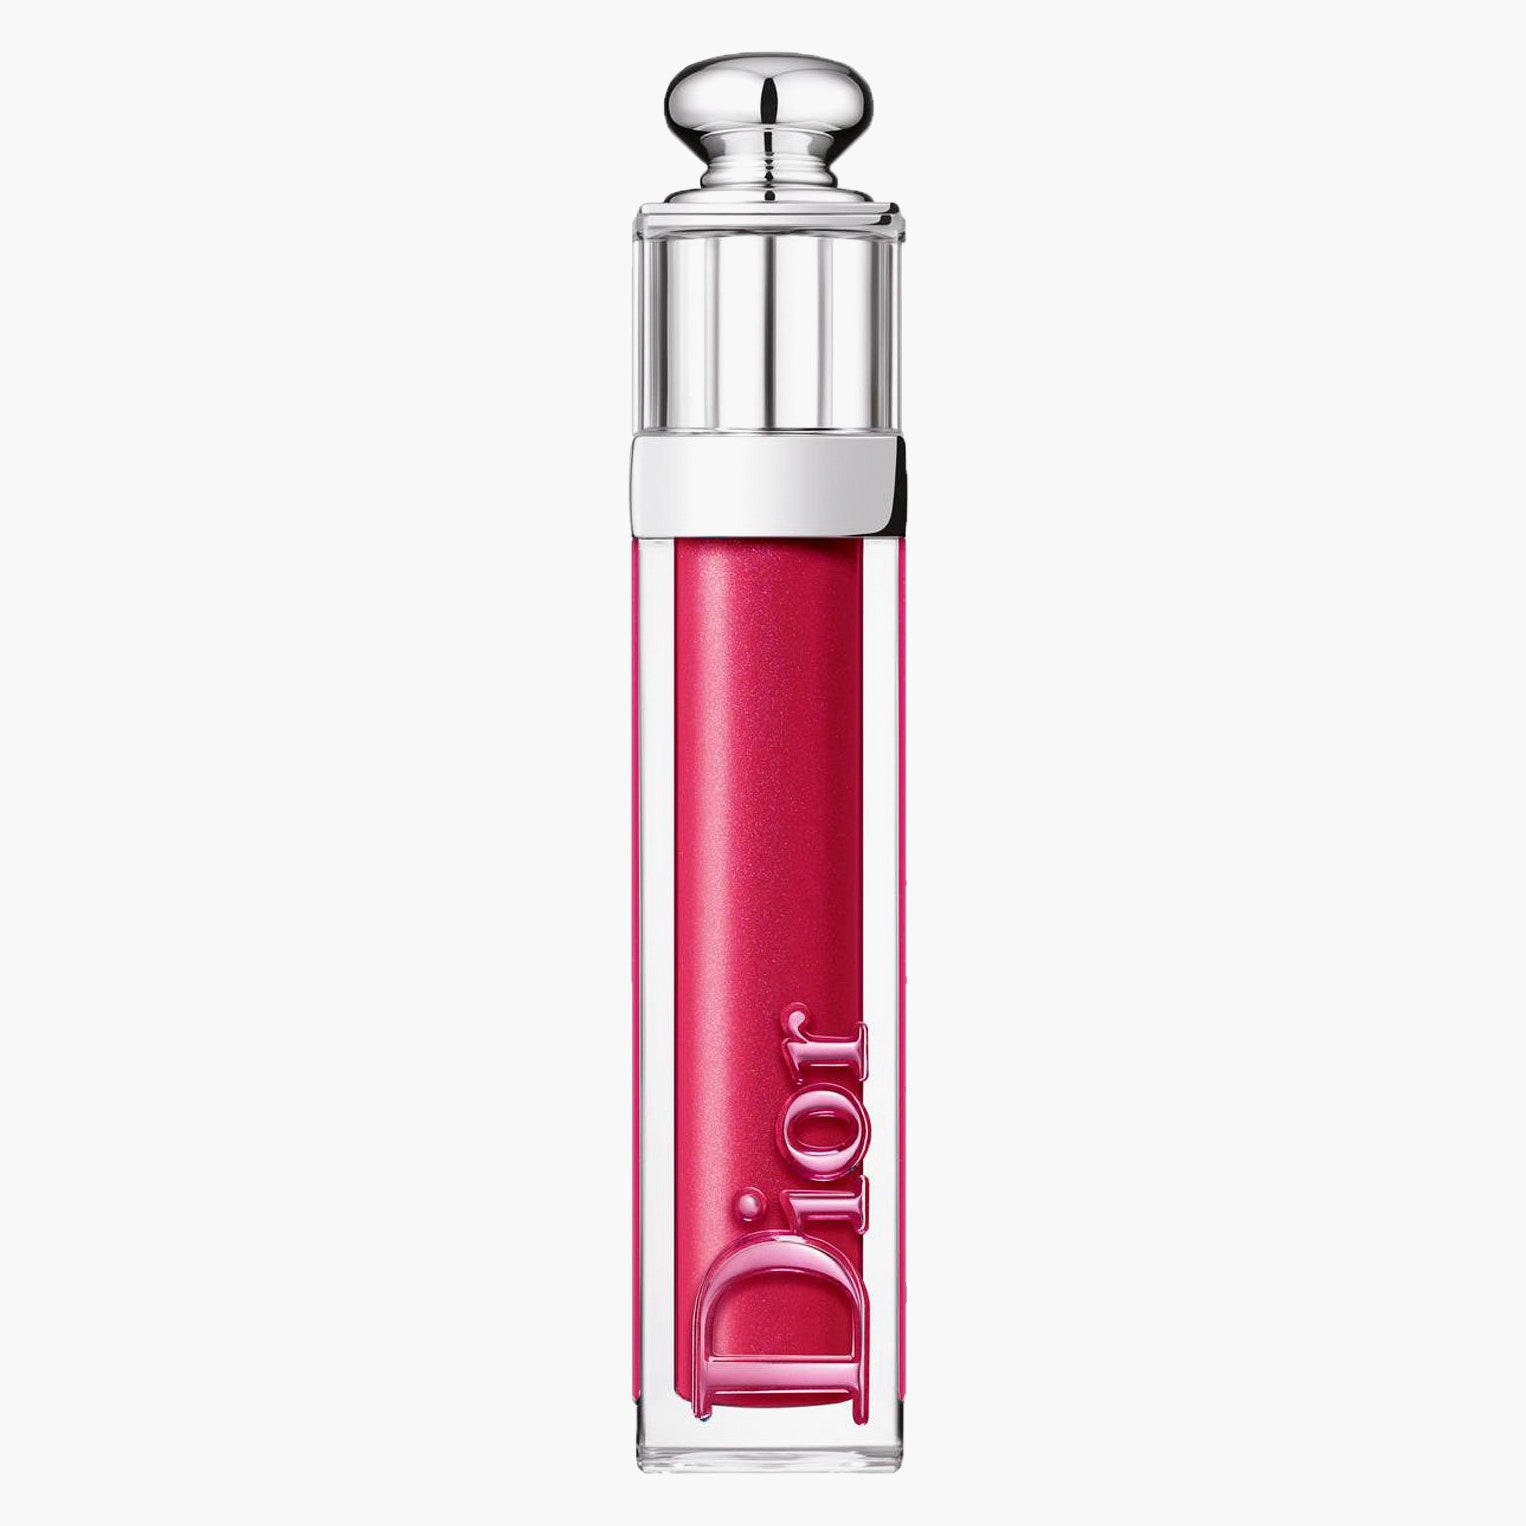 Блеск для губ Dior Addict Stellar Gloss 976 Dior 2600 рублей